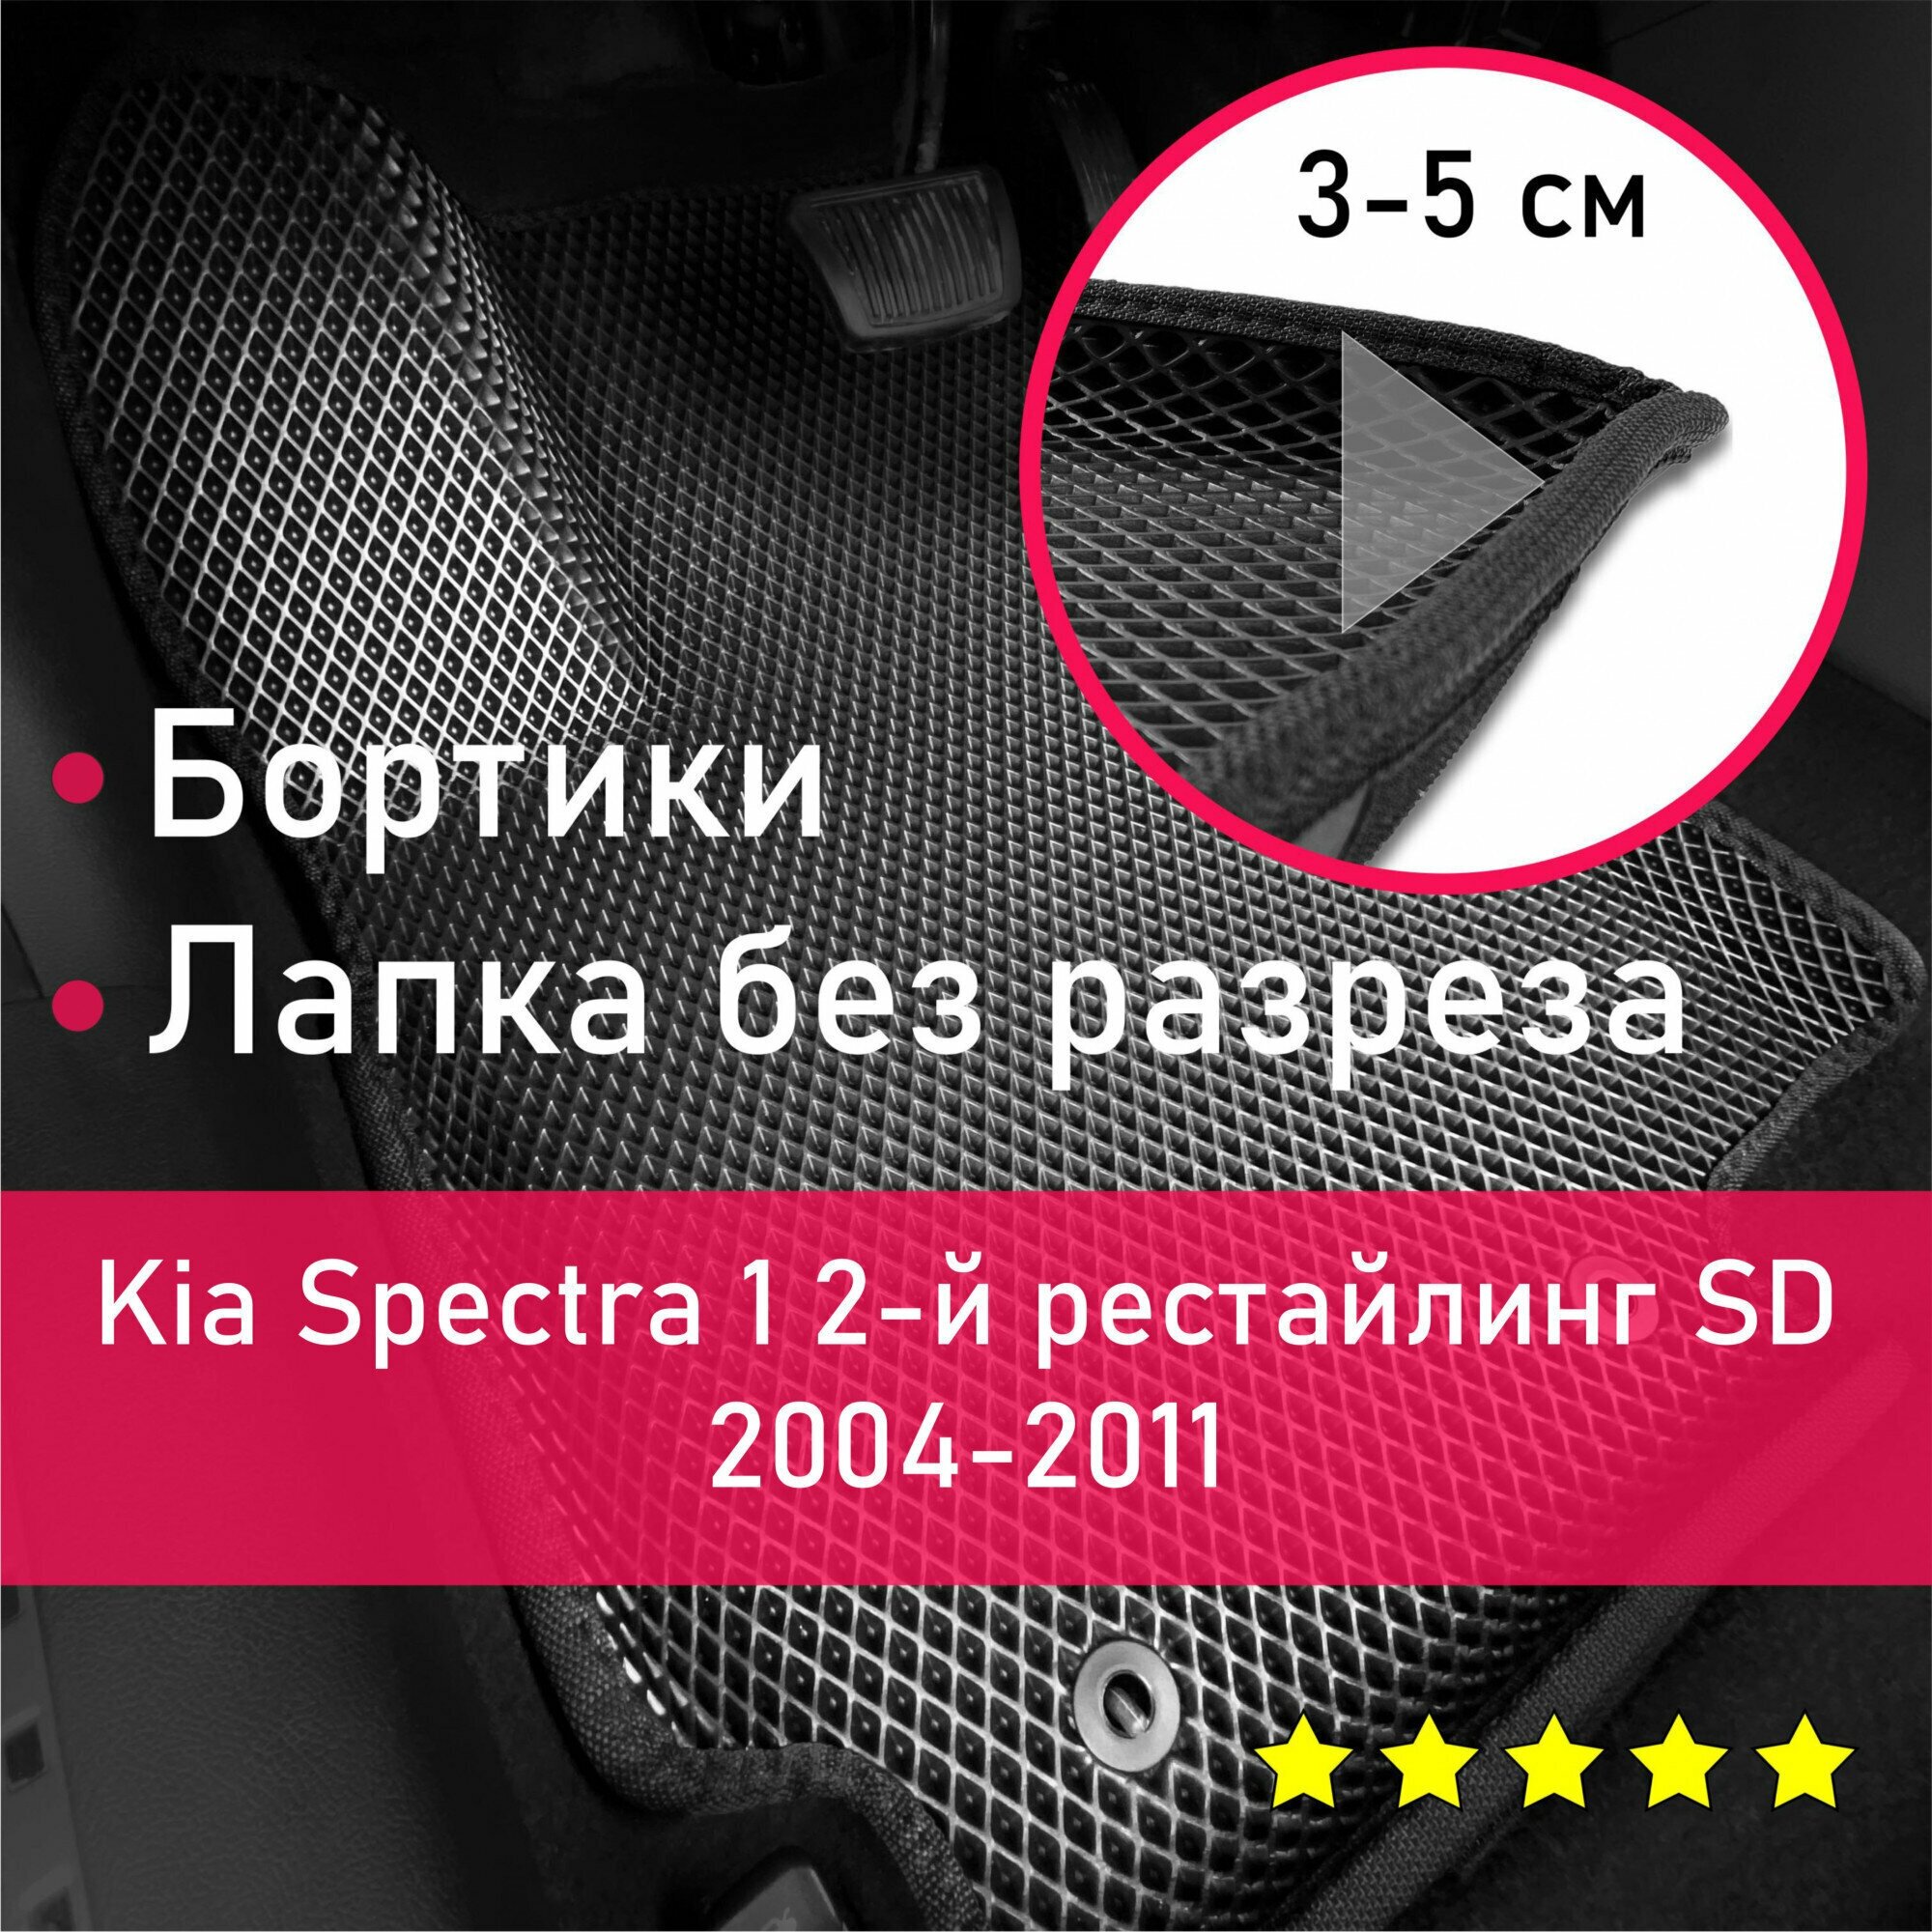 3Д коврики ЕВА (EVA, ЭВА) с бортиками на Kia Spectra 1 2-й рестайлинг SD 2004-2011 Киа Спектра Левый руль Ромб Черный с черной окантовкой